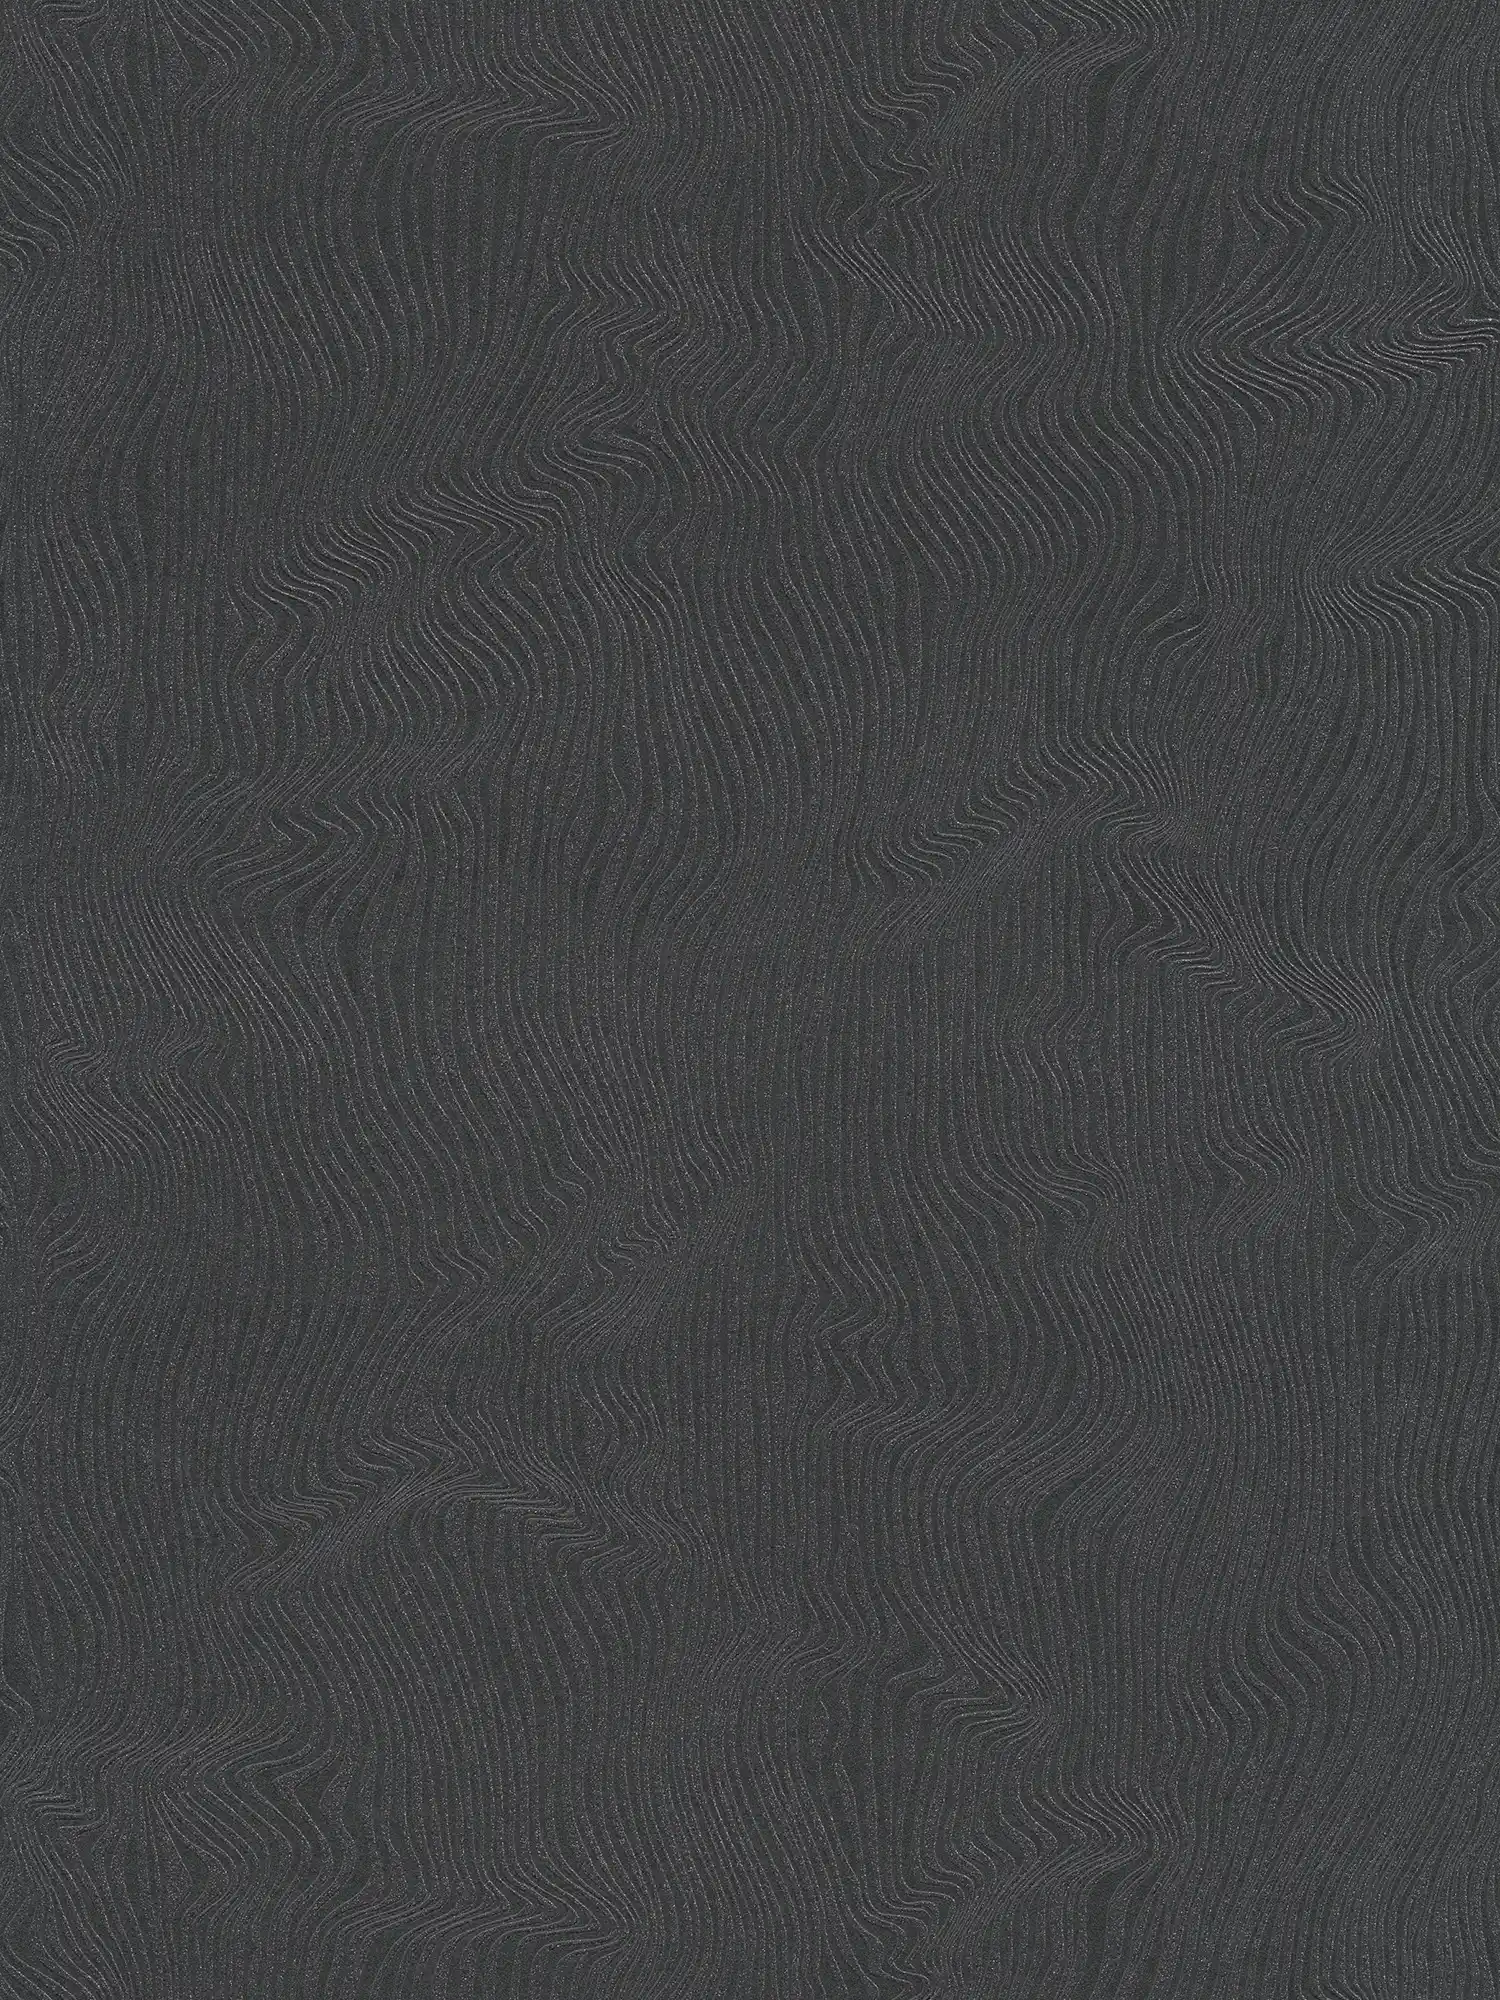 Einfarbige Tapete mit bewegtem Linienmuster – Schwarz
